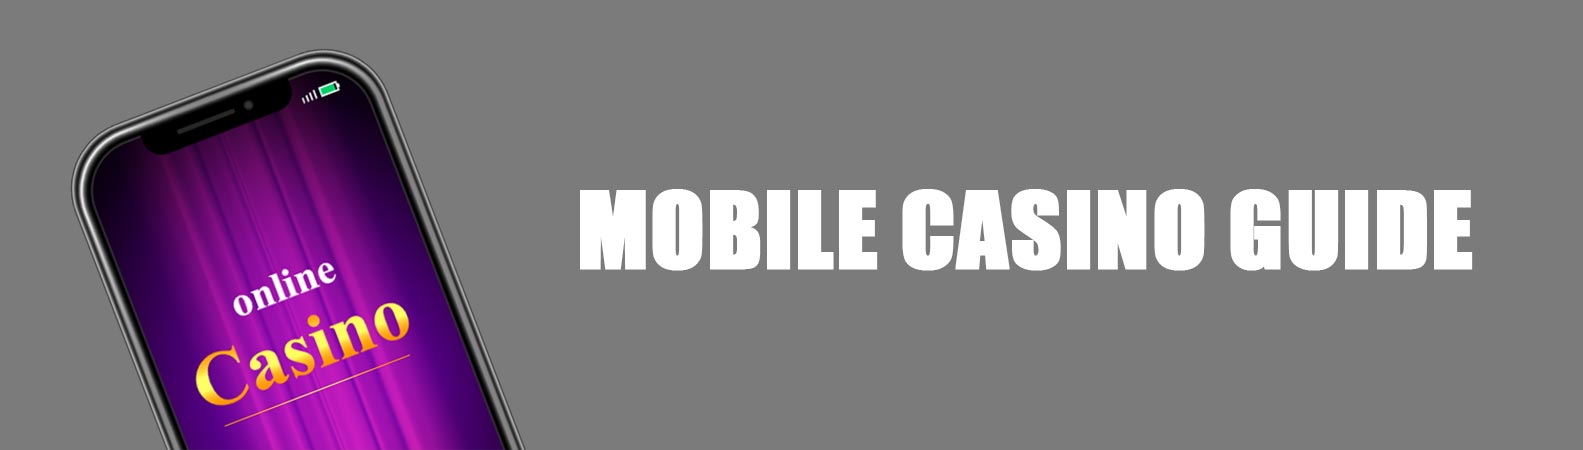 Mobile Casino Guide